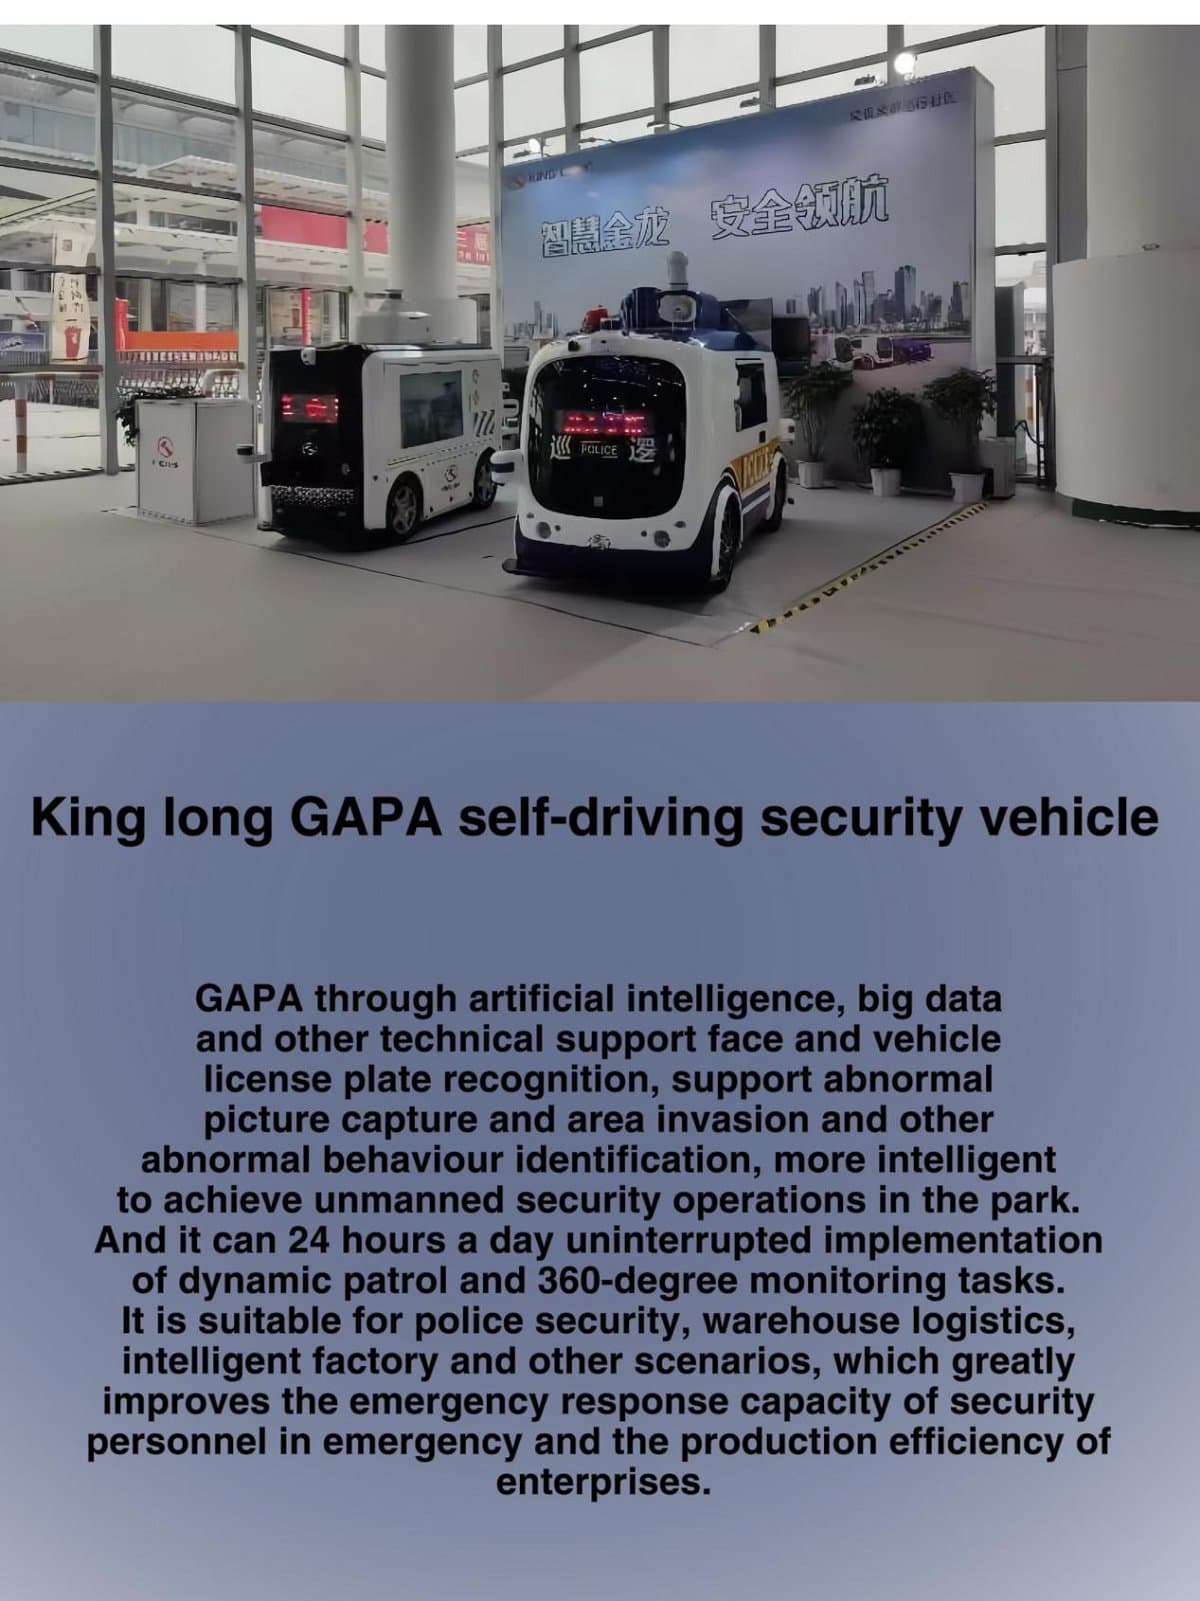 Veículo de segurança autônomo King Long GAPA